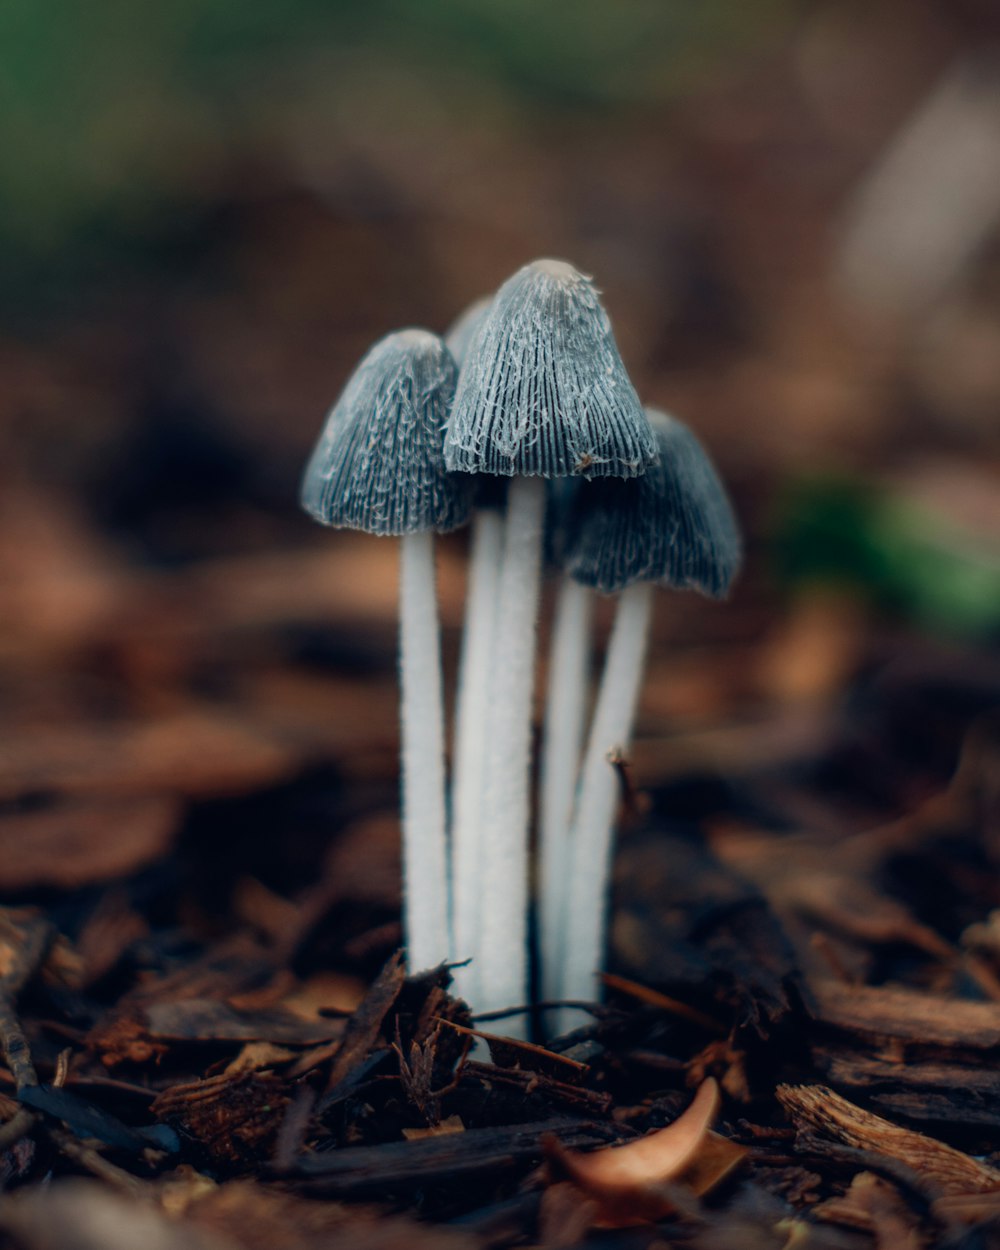 회색 버섯과 흰색 버섯의 선택적 초점 사진